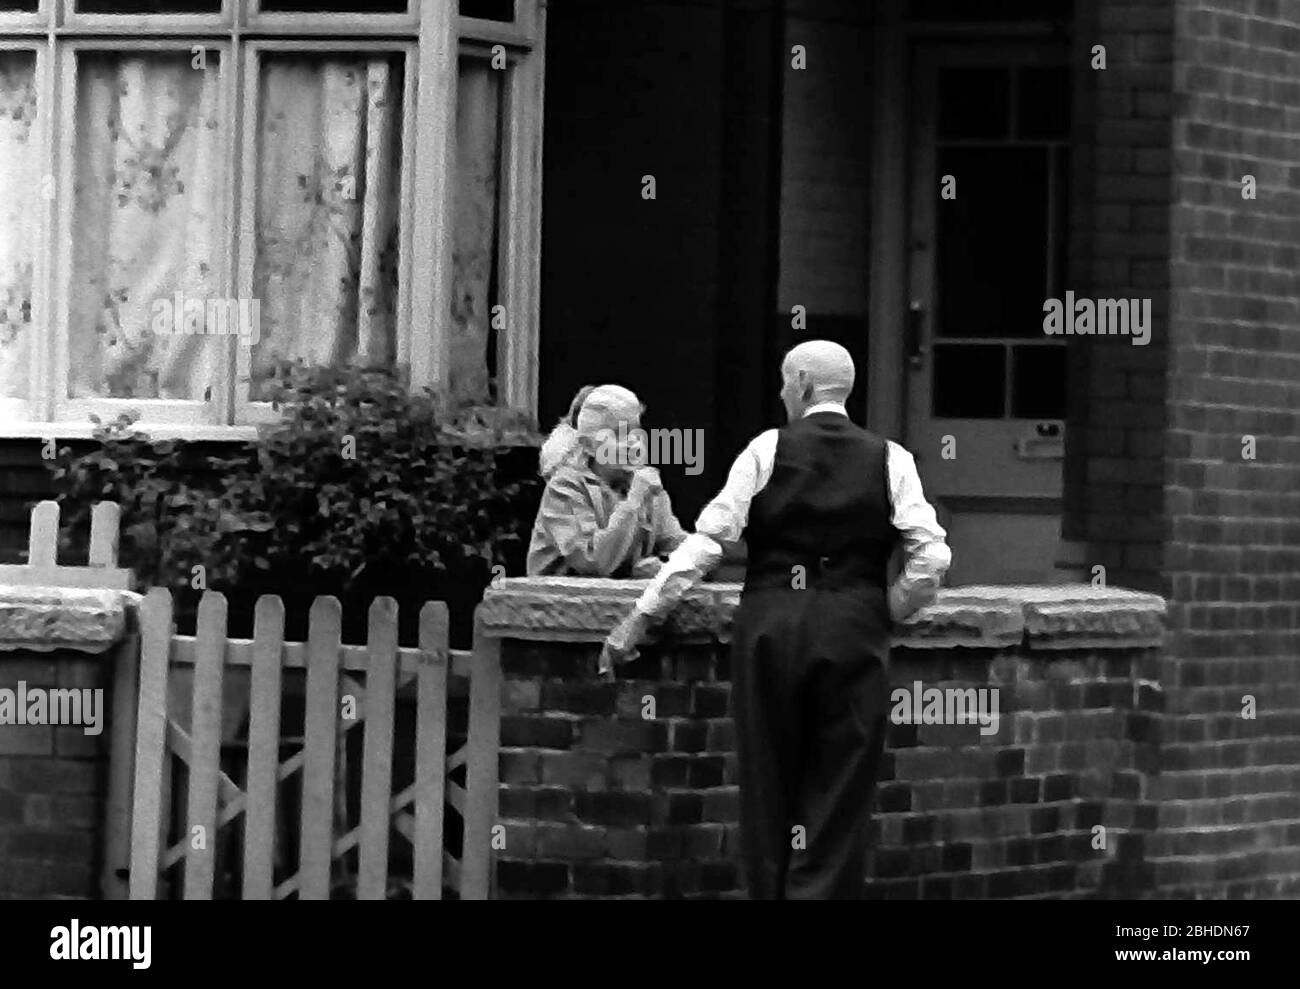 Das tägliche Leben auf den Straßen in Manchester, England, Großbritannien im Jahr 1974. Ein älterer Mann und eine ältere Frau plaudern am Gartentor eines Hauses. Stockfoto